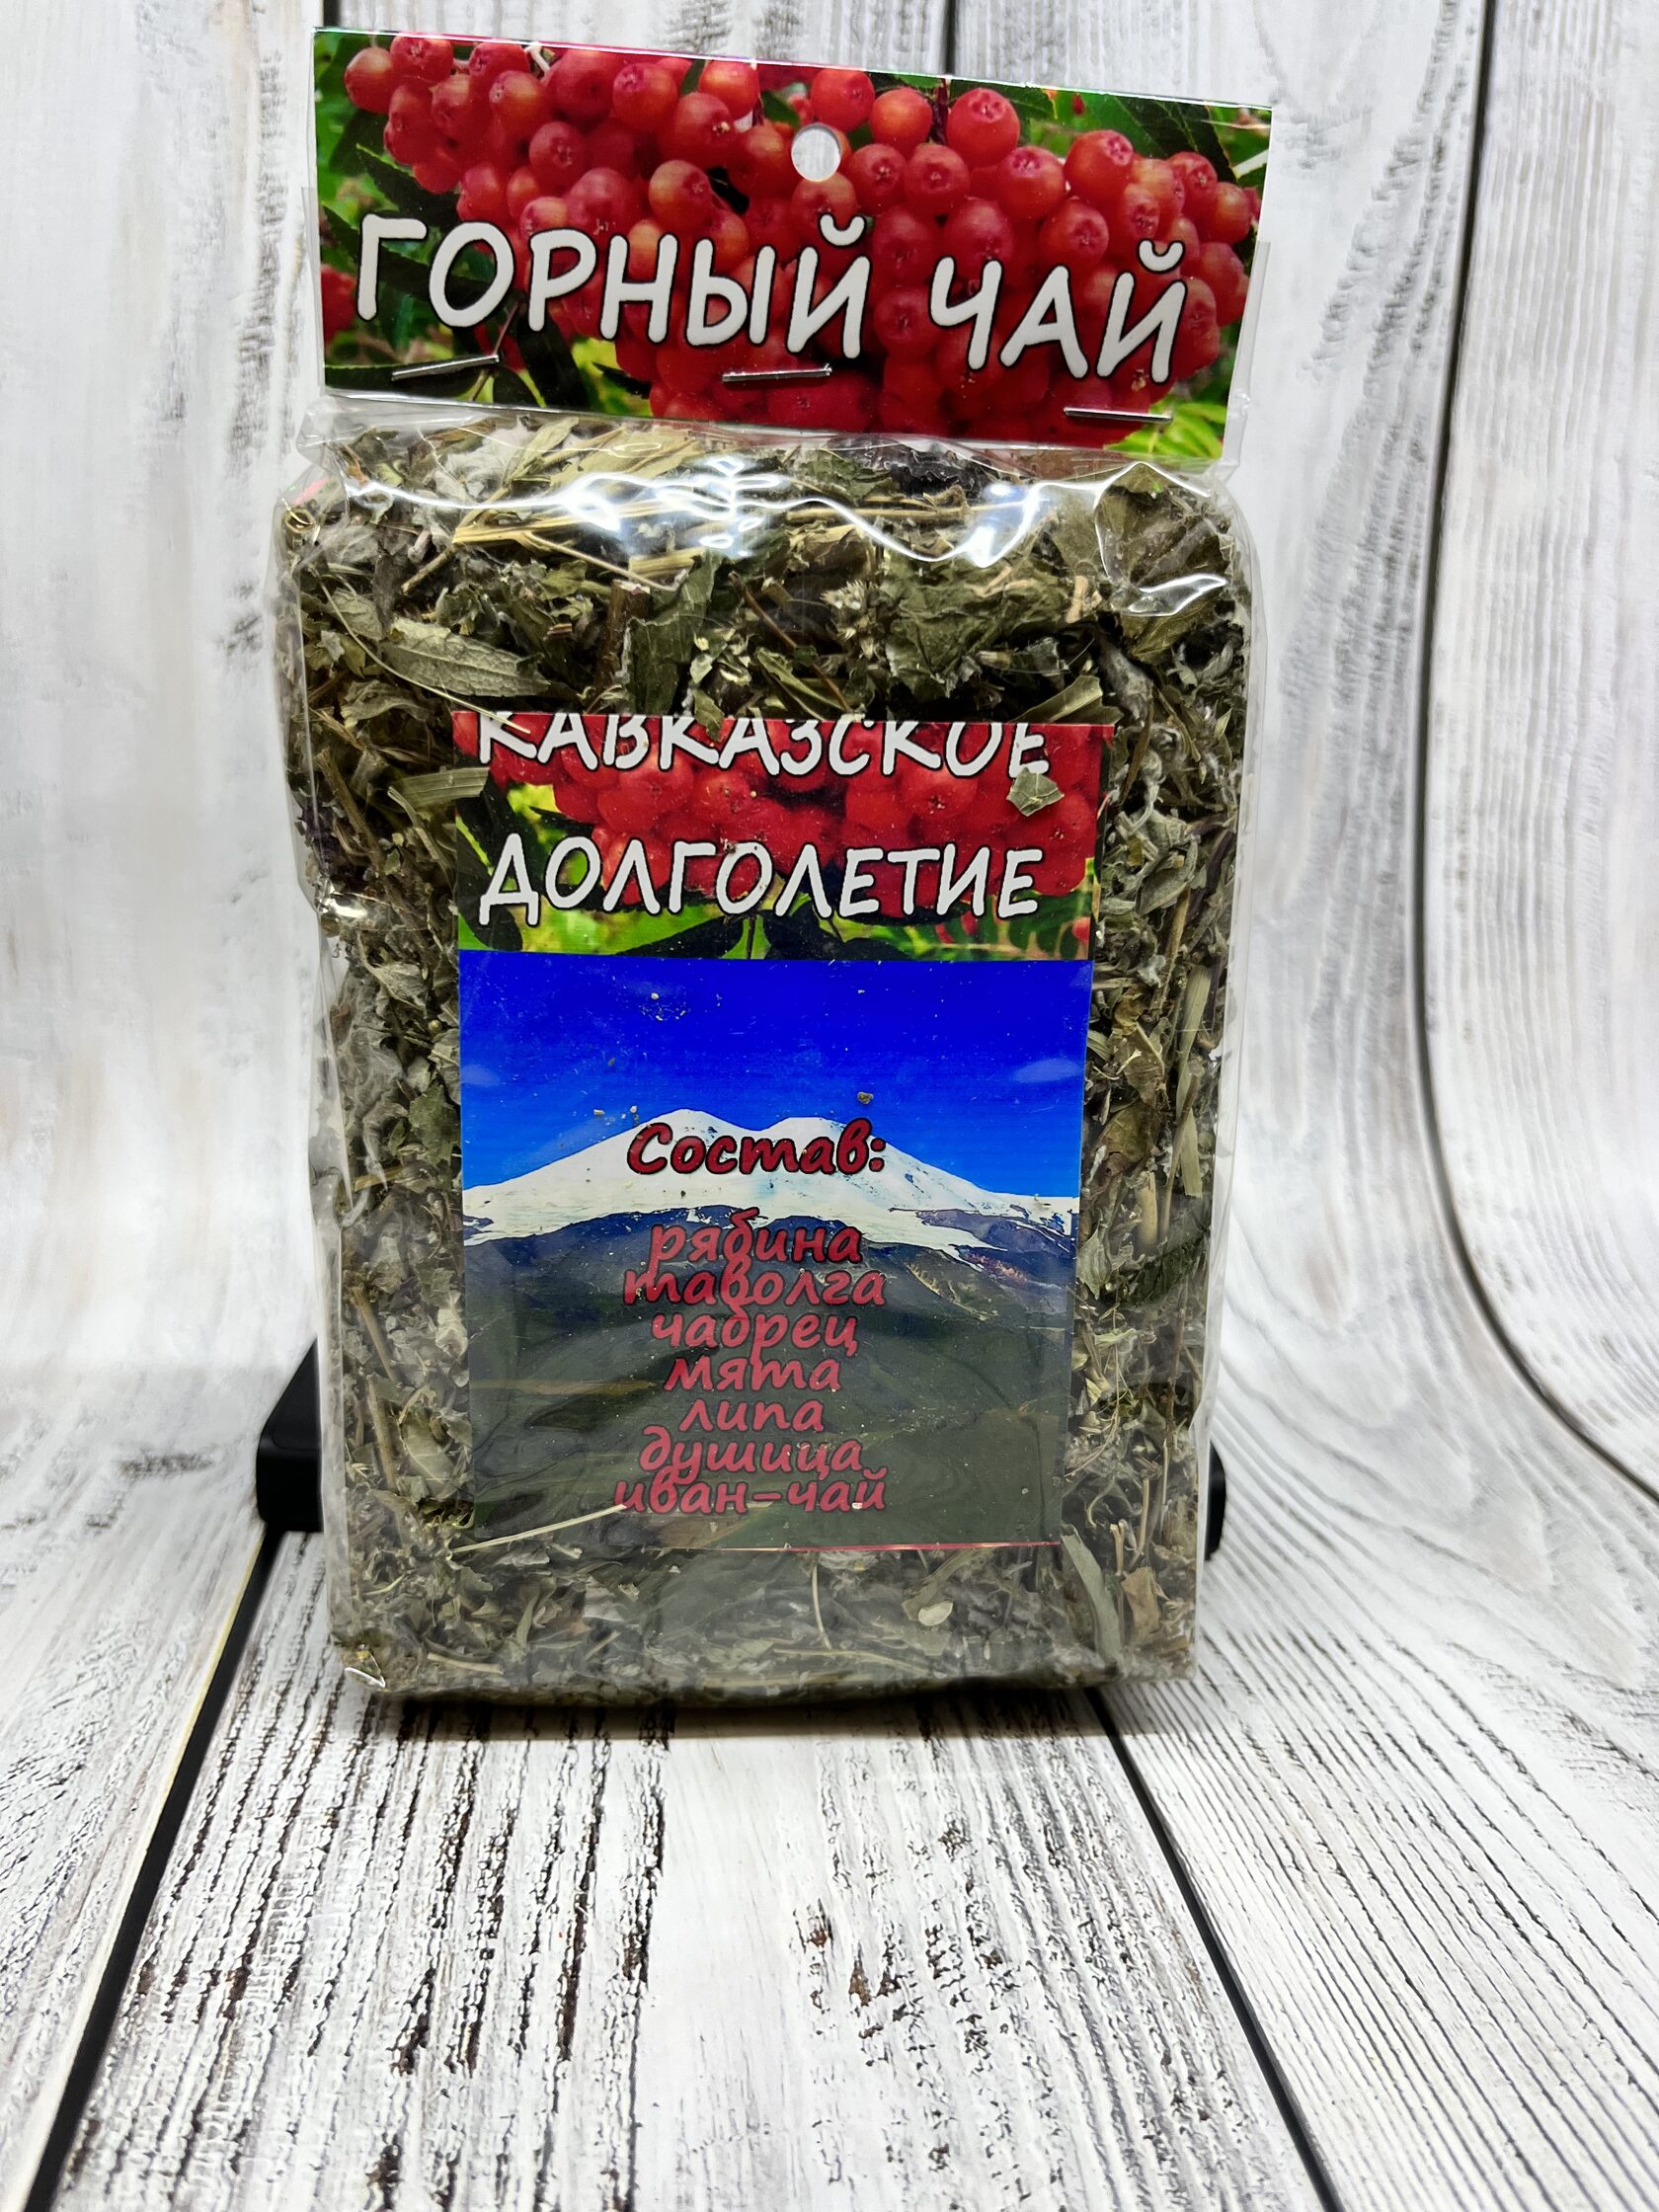 Чай долголетия. Чай кавказское долголетие. Горный чай. Абхазский чай. Горный чай Кавказа.